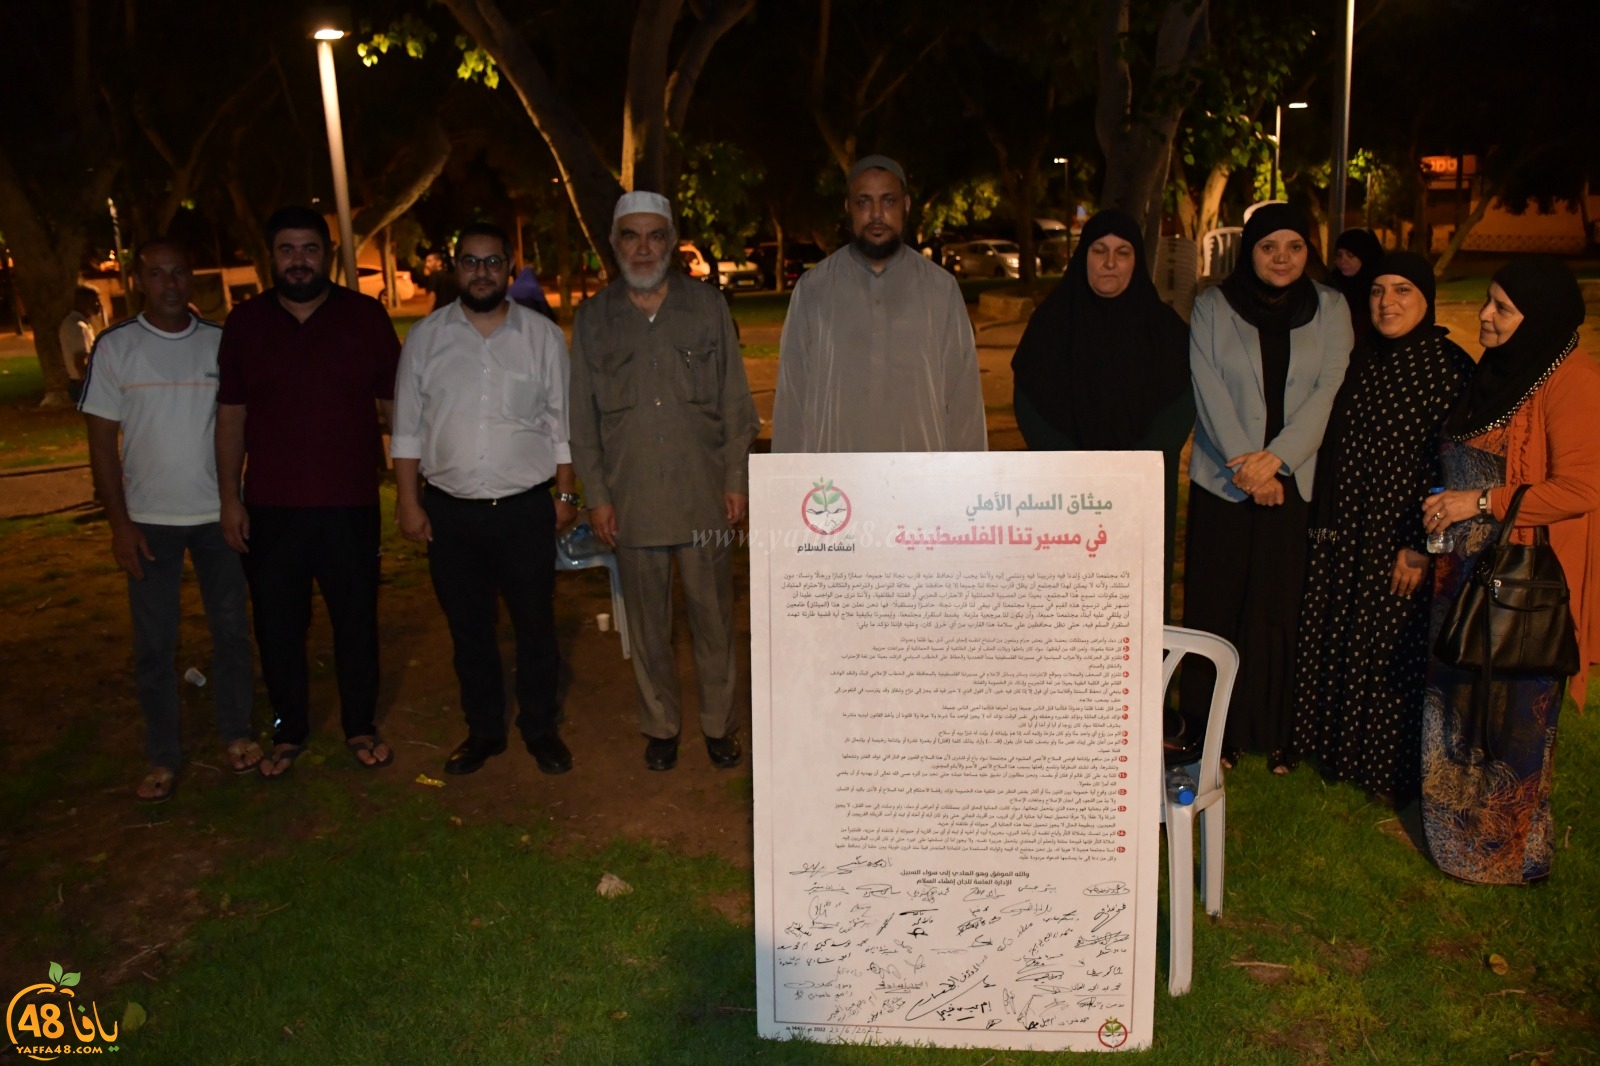  الاحتفال بالتوقيع على ميثاق السلم الأهلي في مدينة يافا 